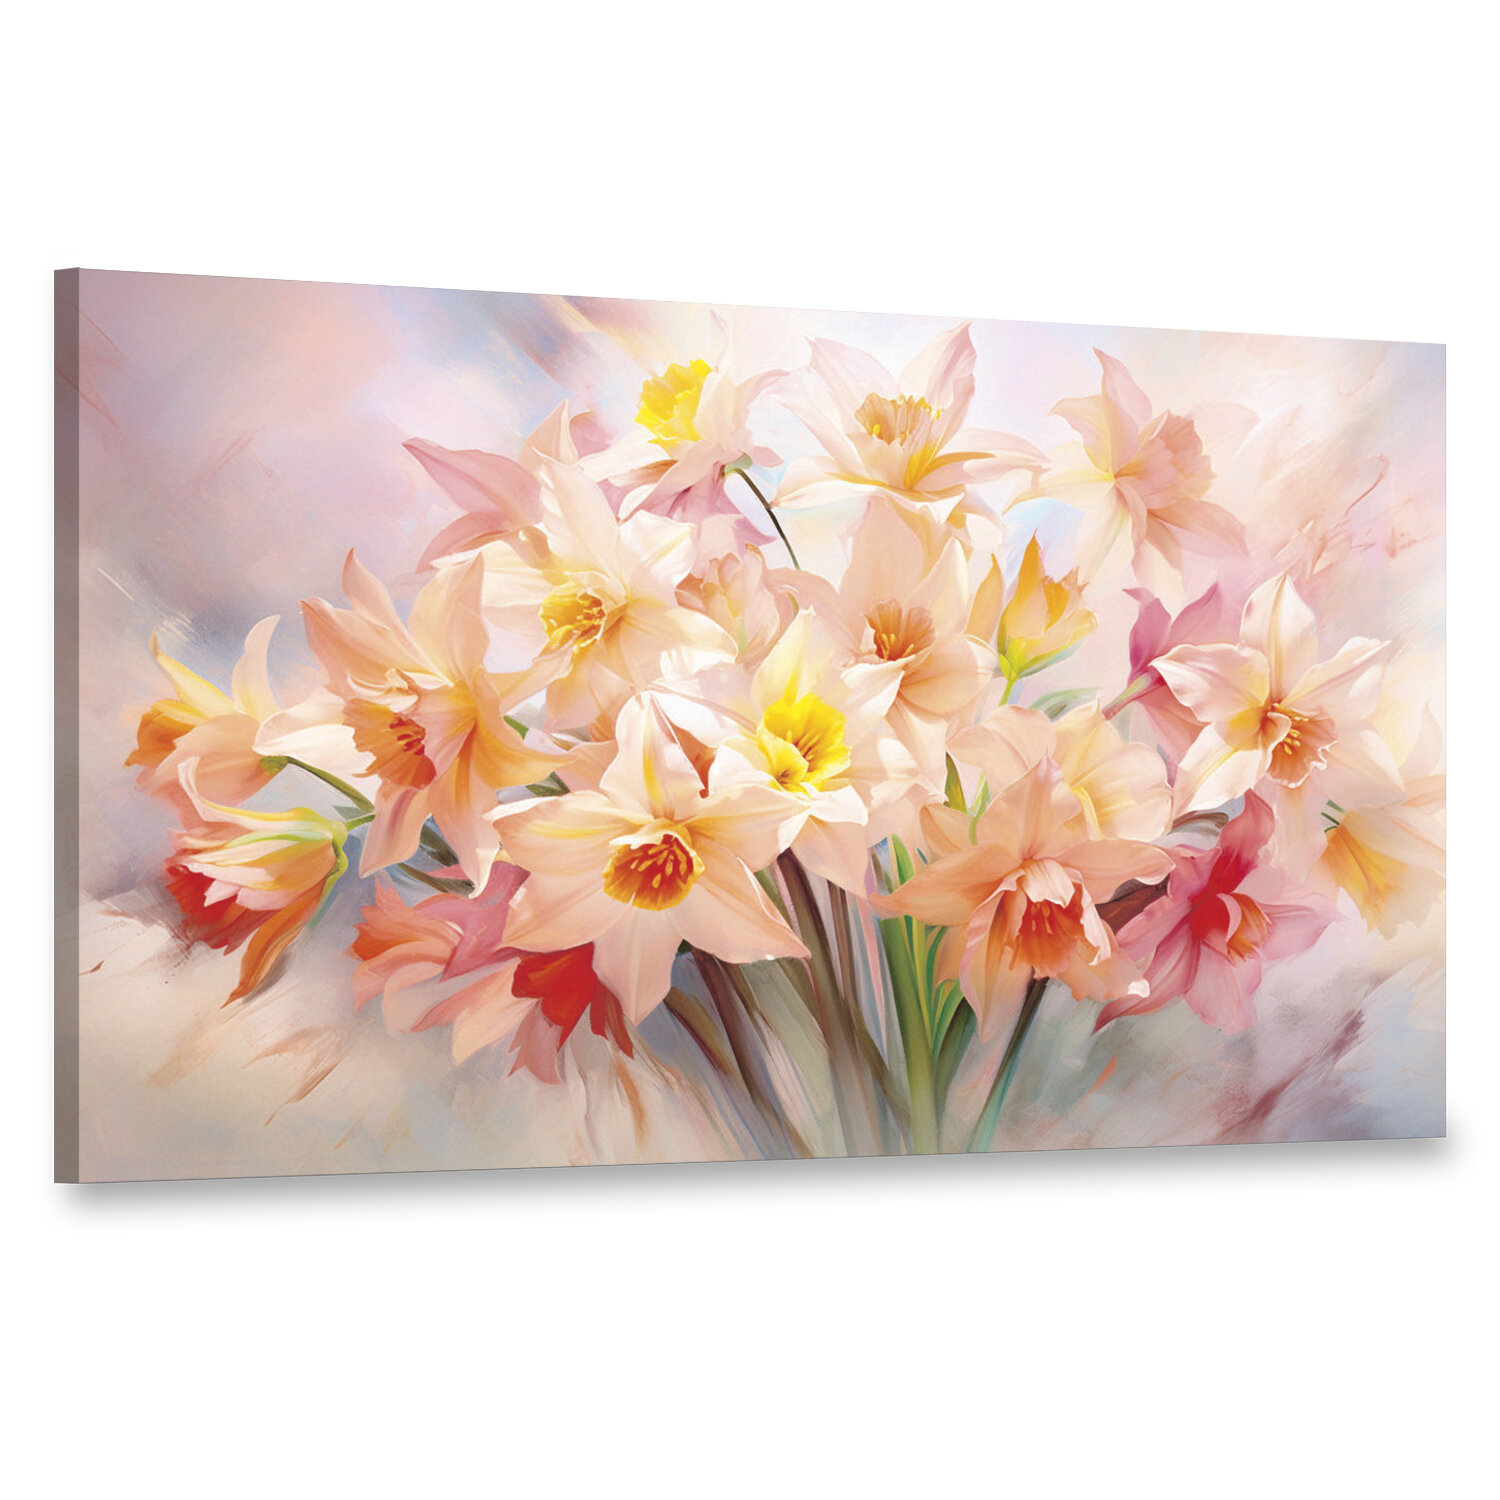 Интерьерная картина 100х60 "Весенний букет"